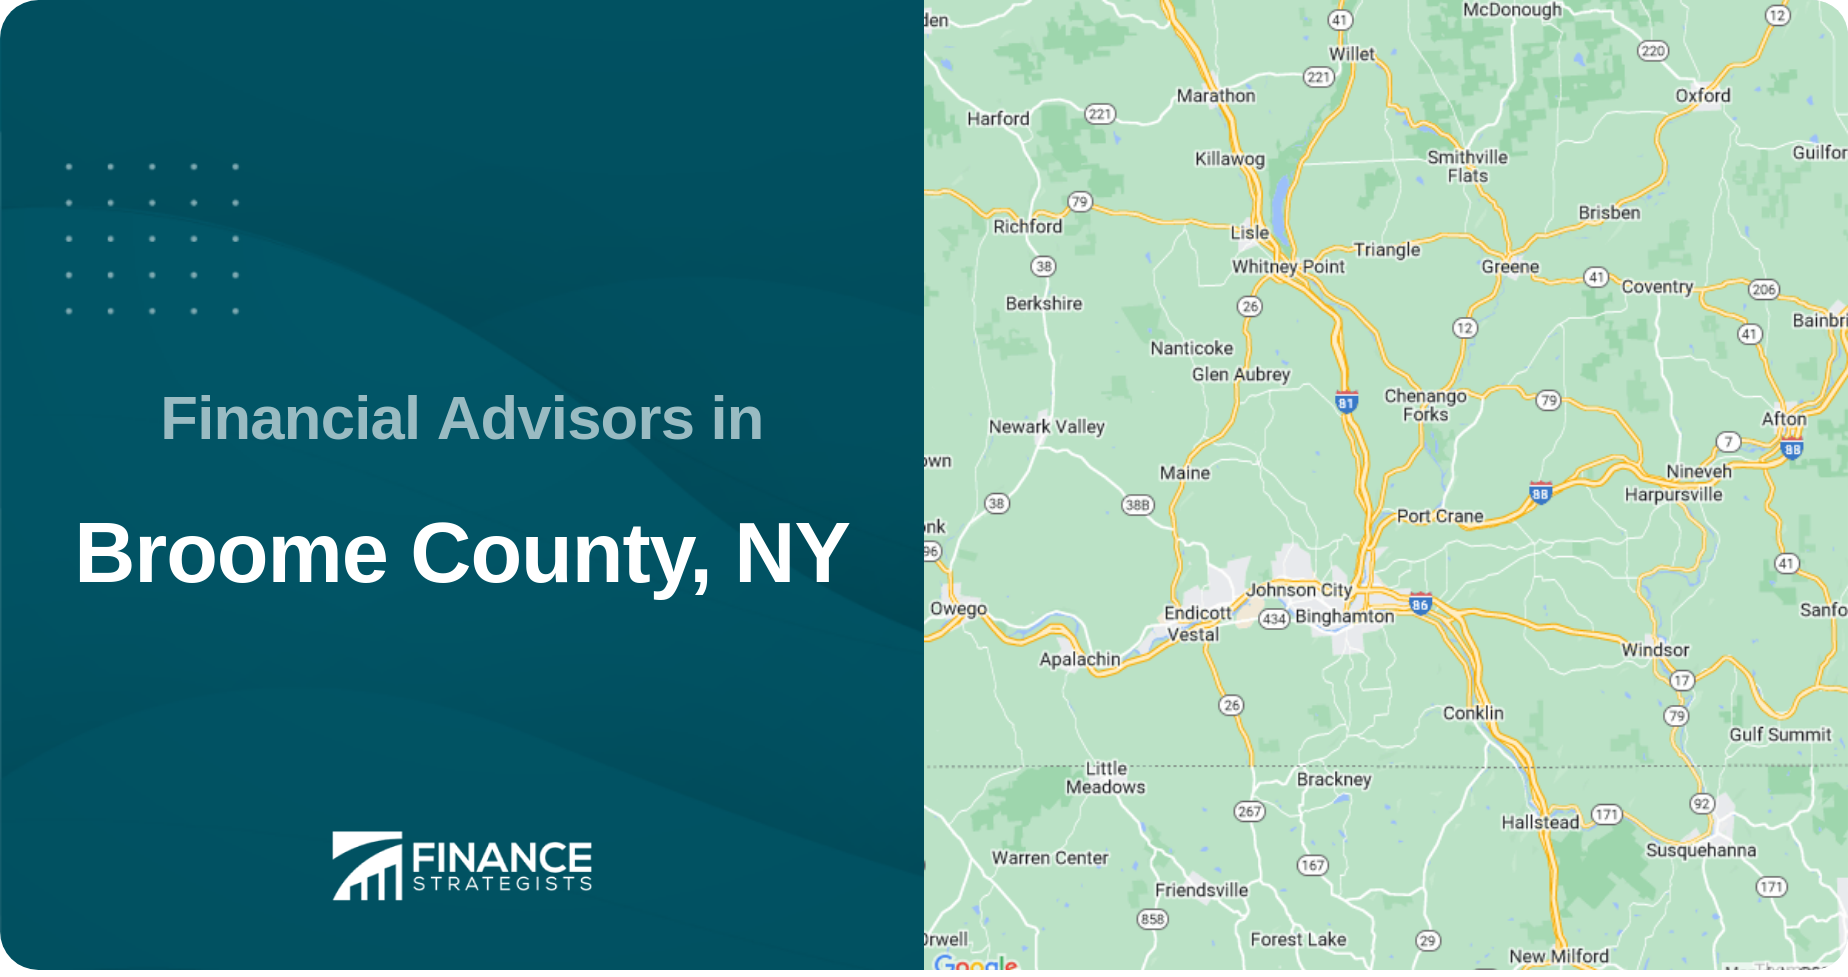 Financial Advisors in Broome County, NY